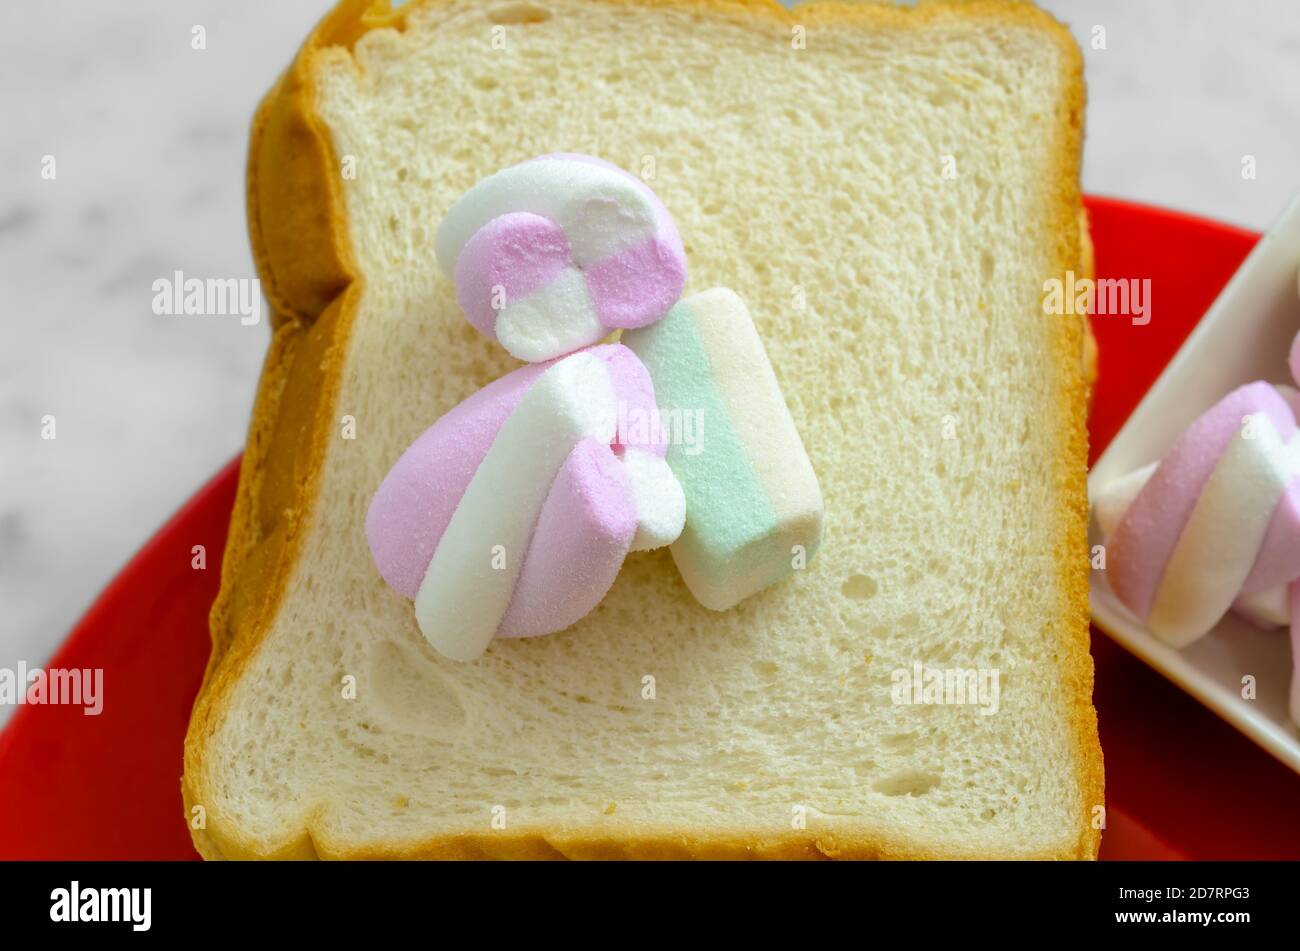 Pastellfarbene Marshmallows auf einer Scheibe Brot bereit, um eingeklemmt werden. Stockfoto